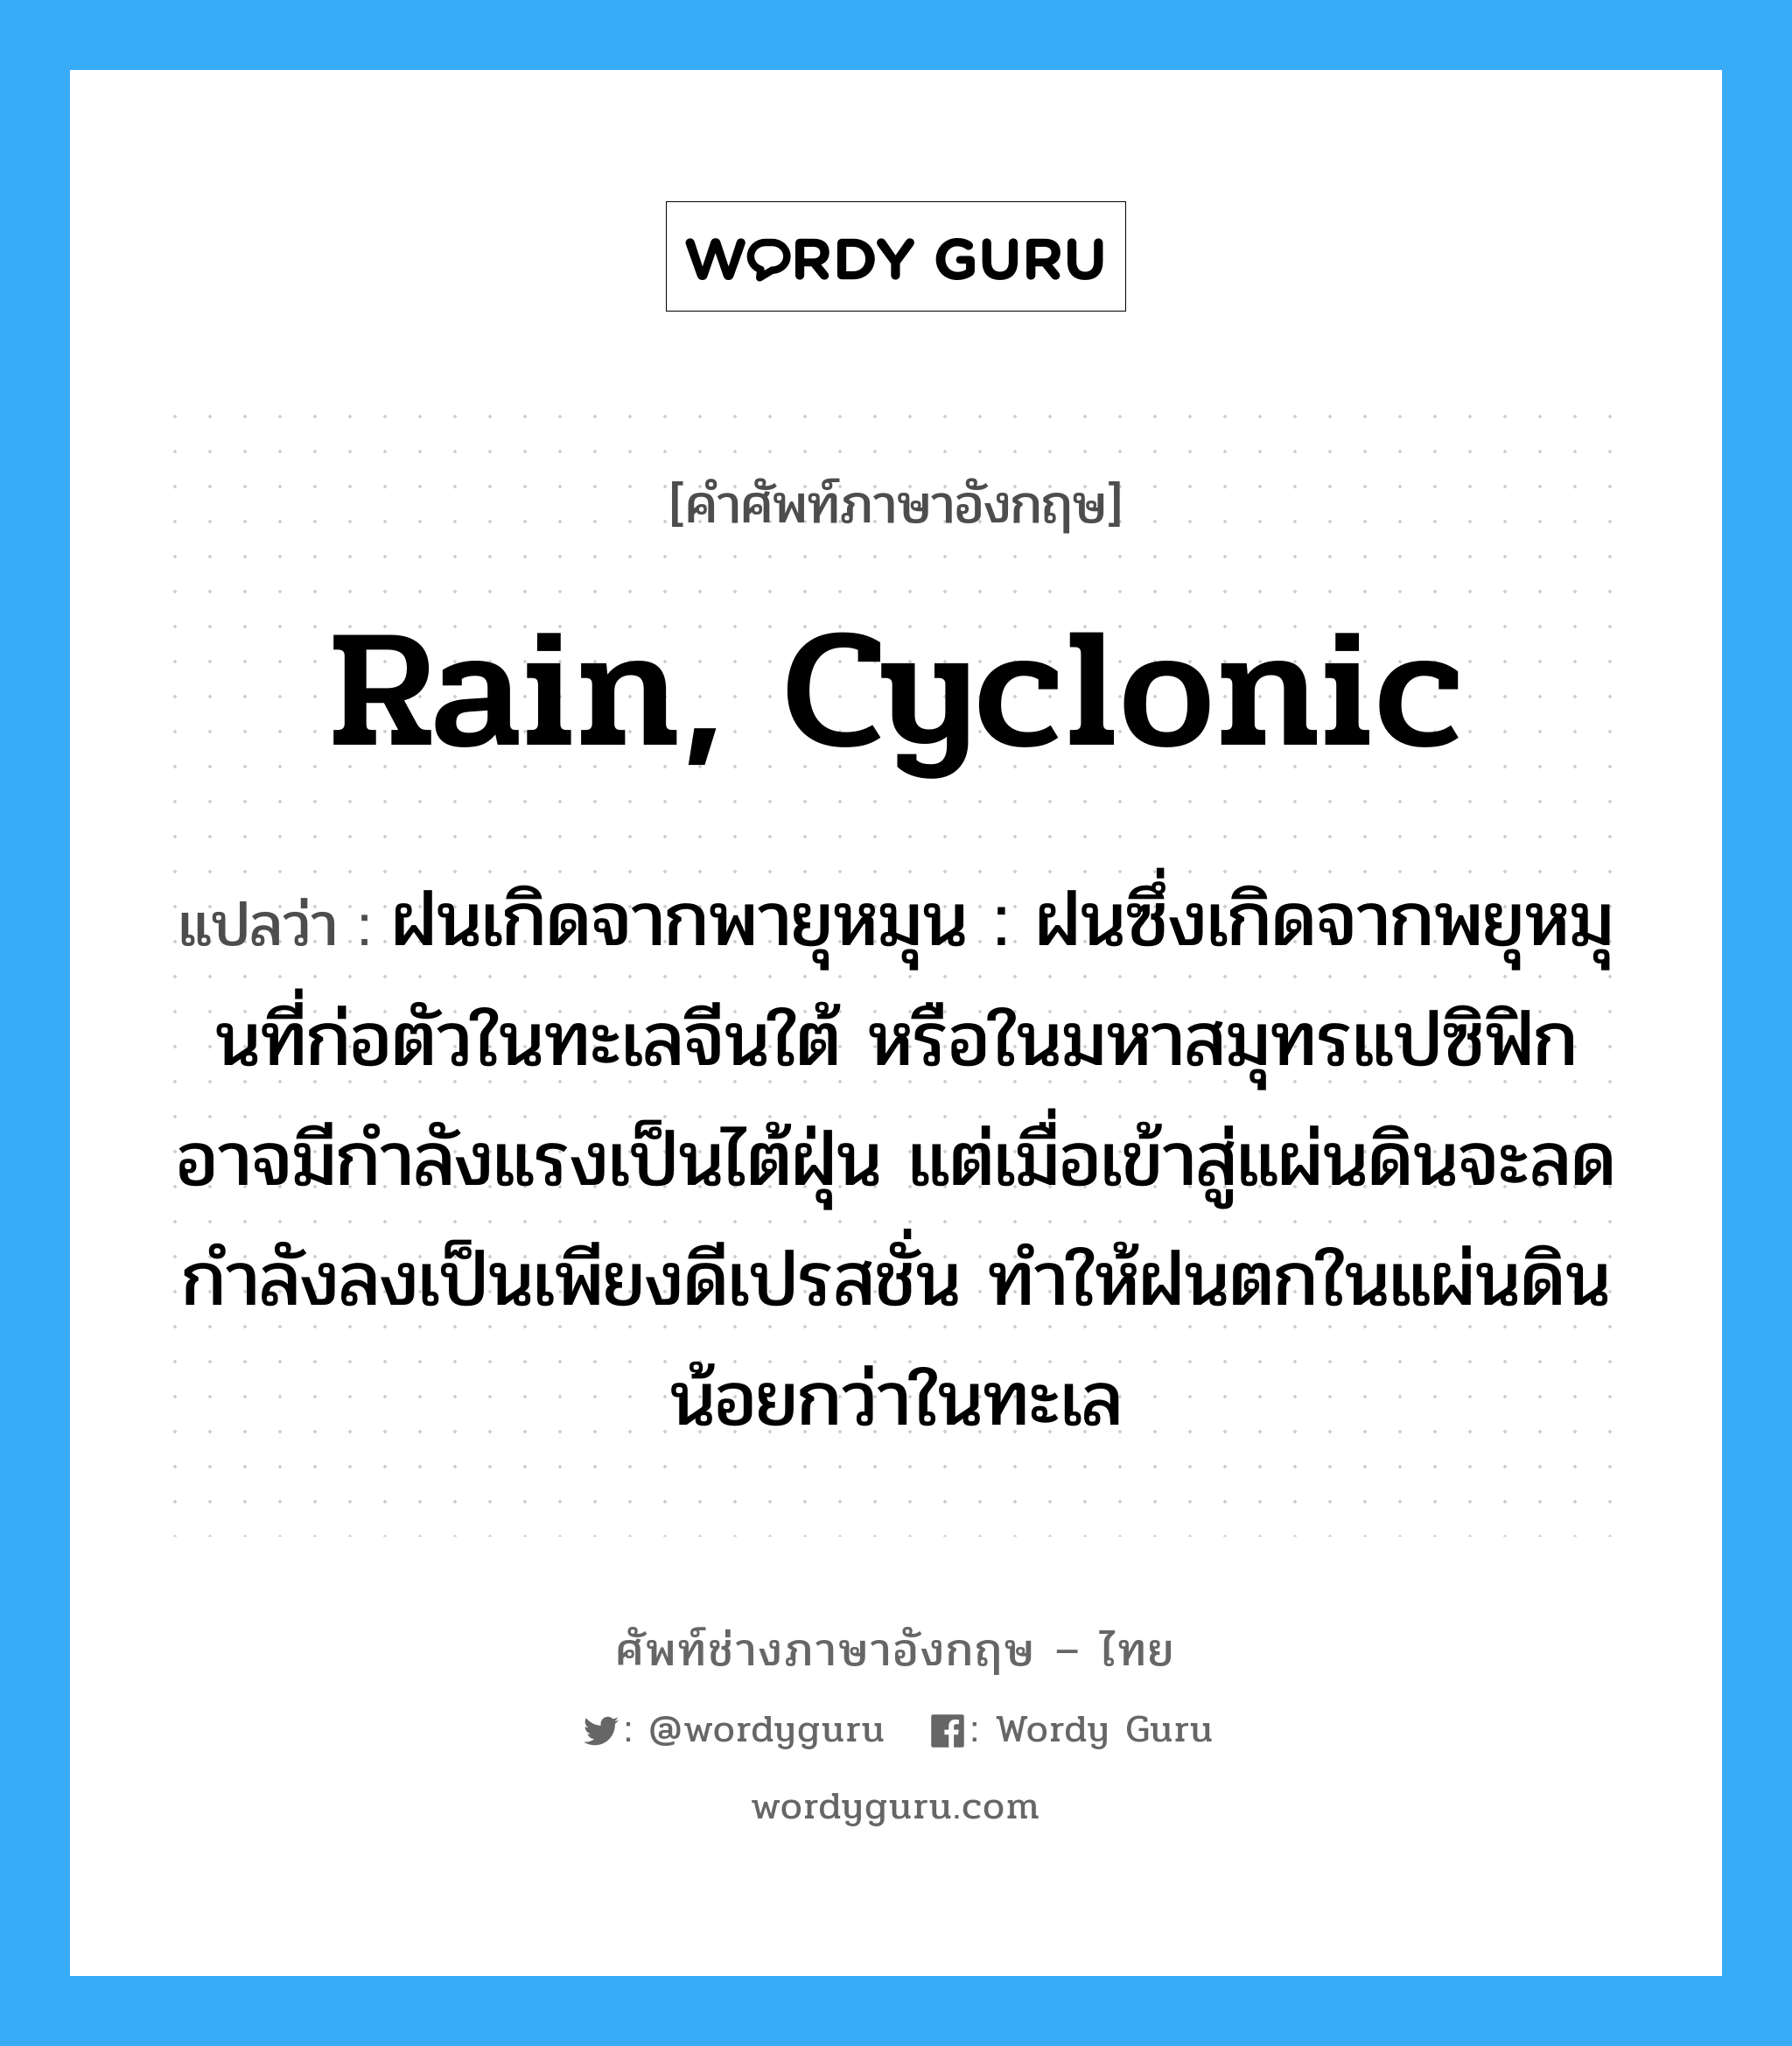 rain, cyclonic แปลว่า?, คำศัพท์ช่างภาษาอังกฤษ - ไทย rain, cyclonic คำศัพท์ภาษาอังกฤษ rain, cyclonic แปลว่า ฝนเกิดจากพายุหมุน : ฝนซึ่งเกิดจากพยุหมุนที่ก่อตัวในทะเลจีนใต้ หรือในมหาสมุทรแปซิฟิกอาจมีกำลังแรงเป็นไต้ฝุ่น แต่เมื่อเข้าสู่แผ่นดินจะลดกำลังลงเป็นเพียงดีเปรสชั่น ทำให้ฝนตกในแผ่นดินน้อยกว่าในทะเล